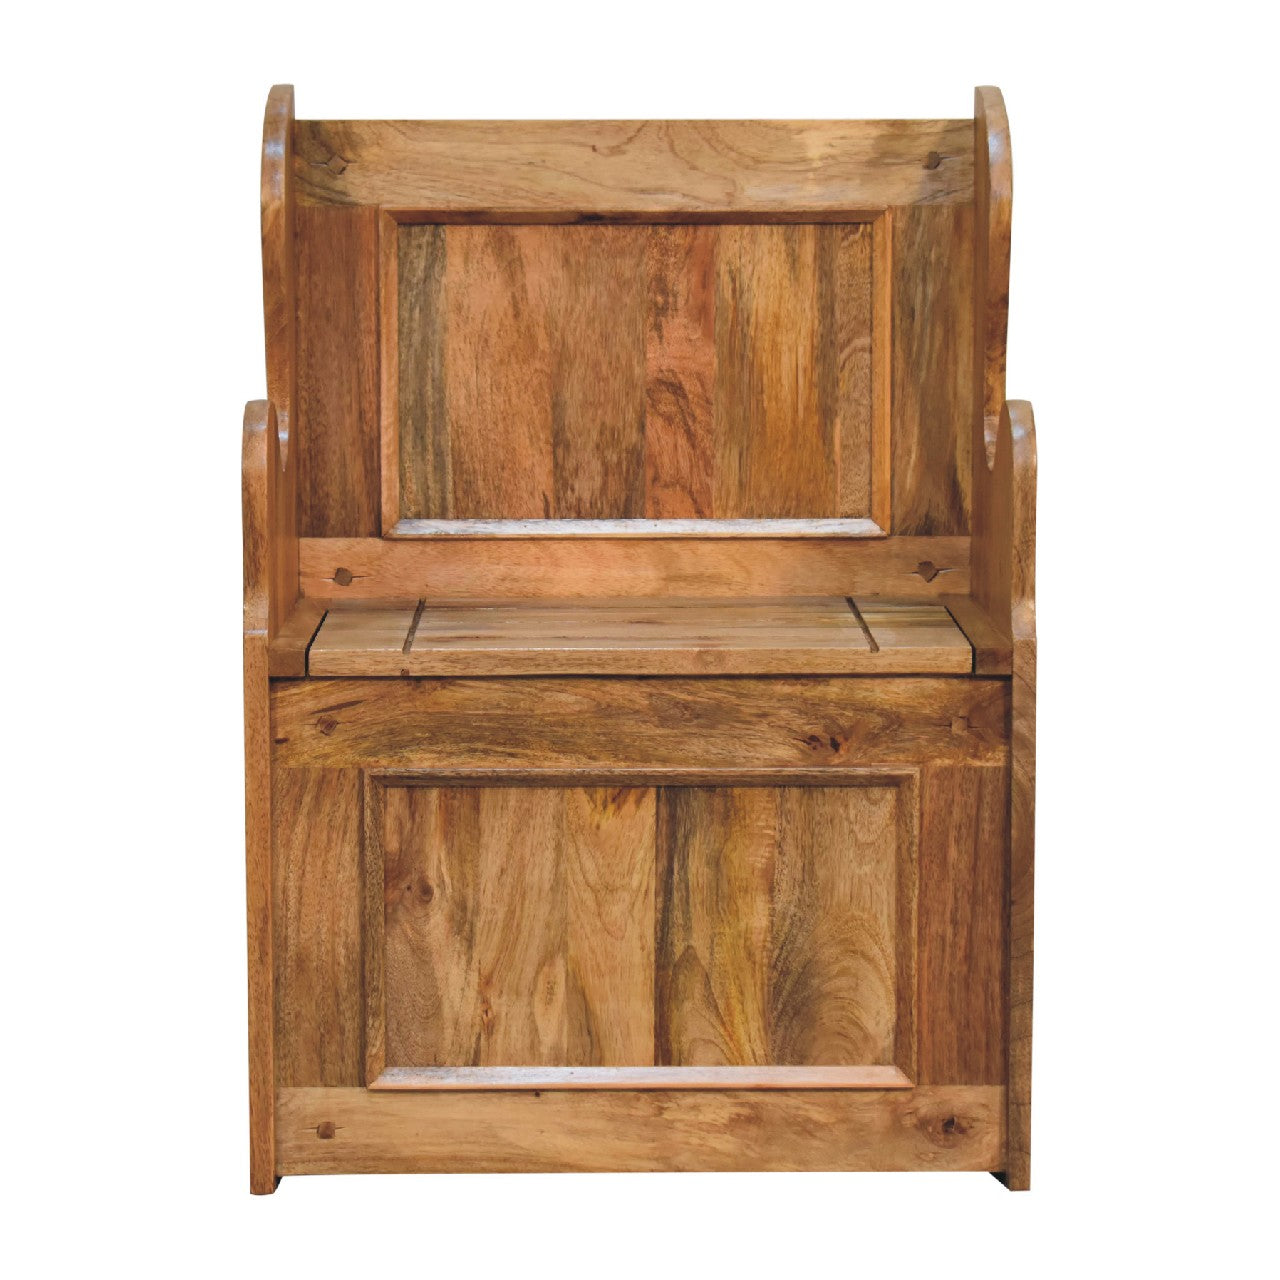 Mini Monks Storage Bench Oak-ish Finished Solid Mango Wood - CasaFenix